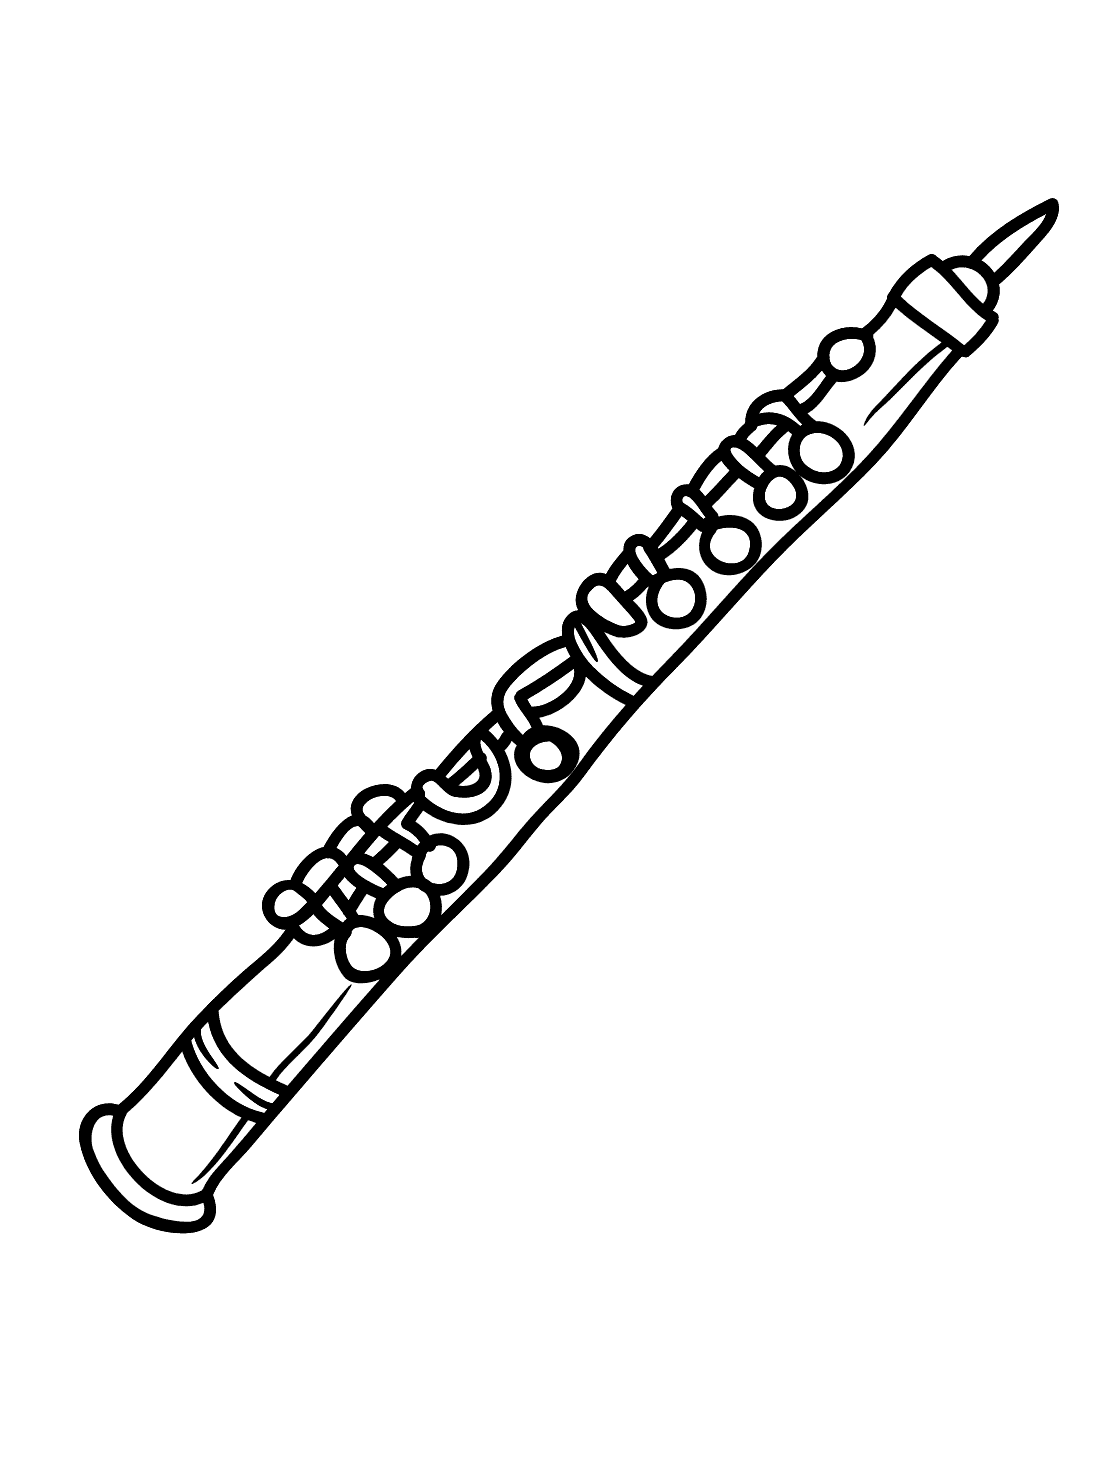 Oboe flute